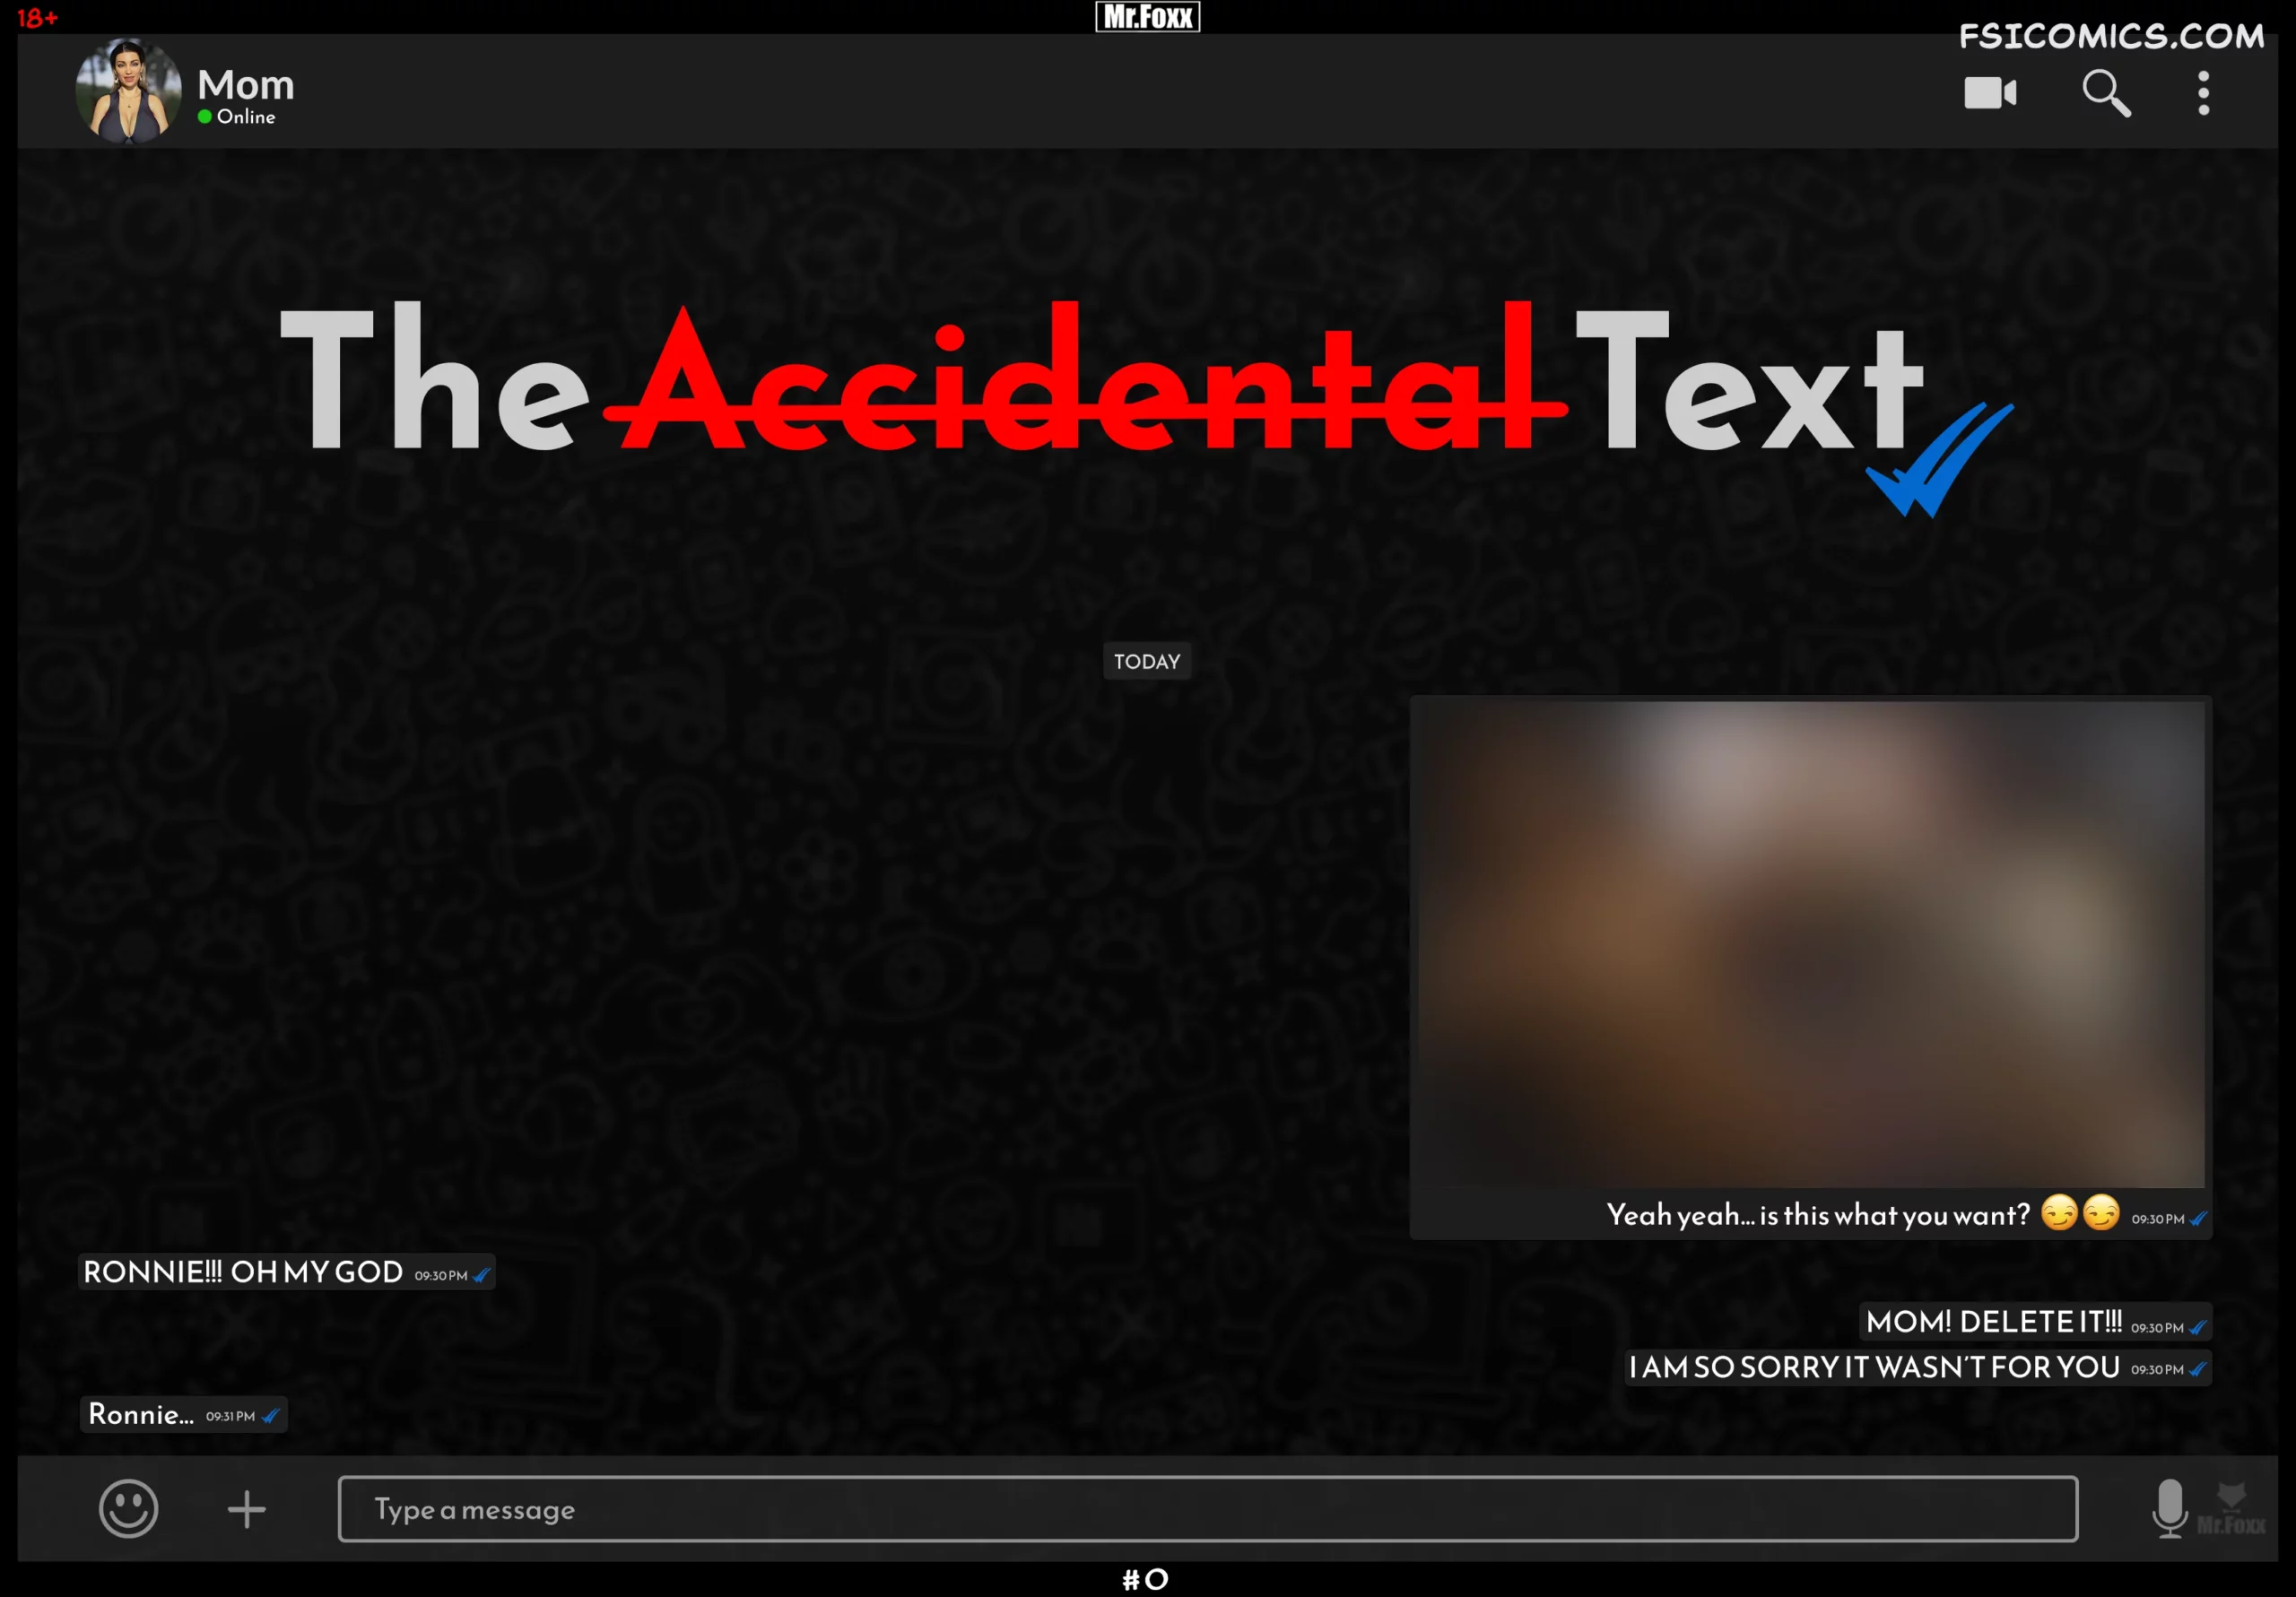 The Accidental Text - Mr.FOXX - 79 - FSIComics